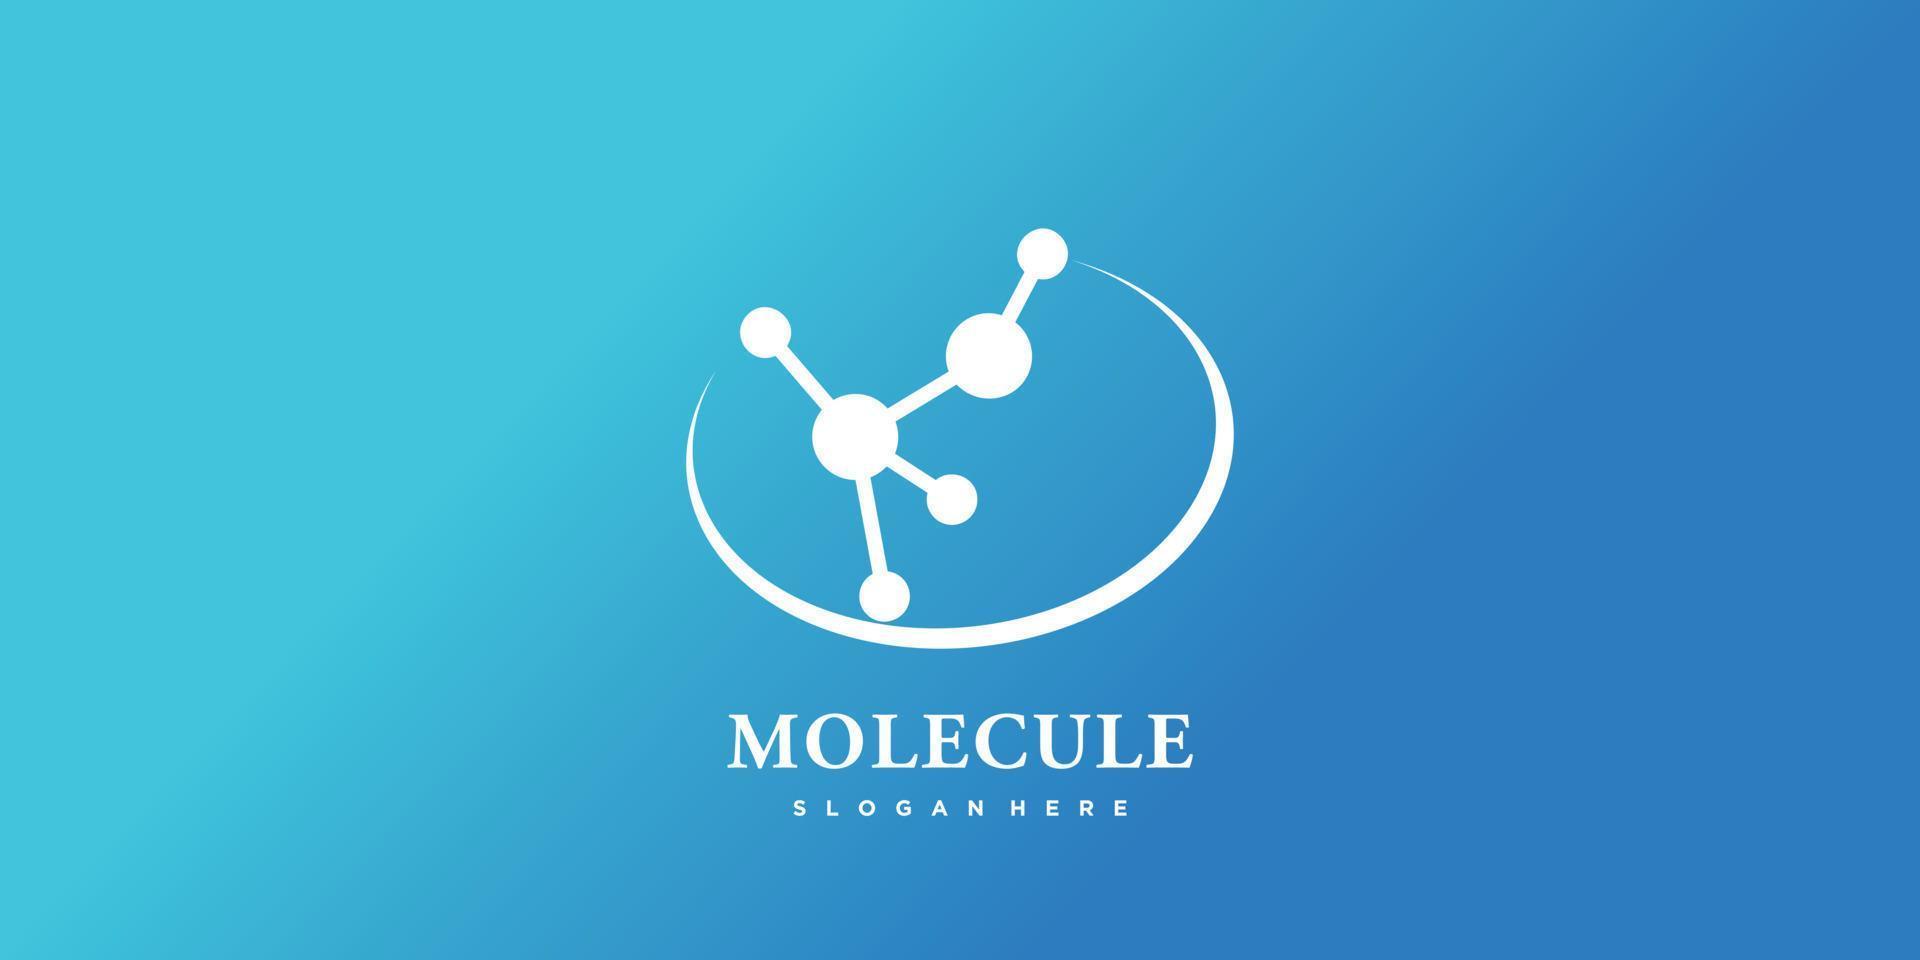 molecuul technologie logo sjabloon met modern abstract concept premie vector